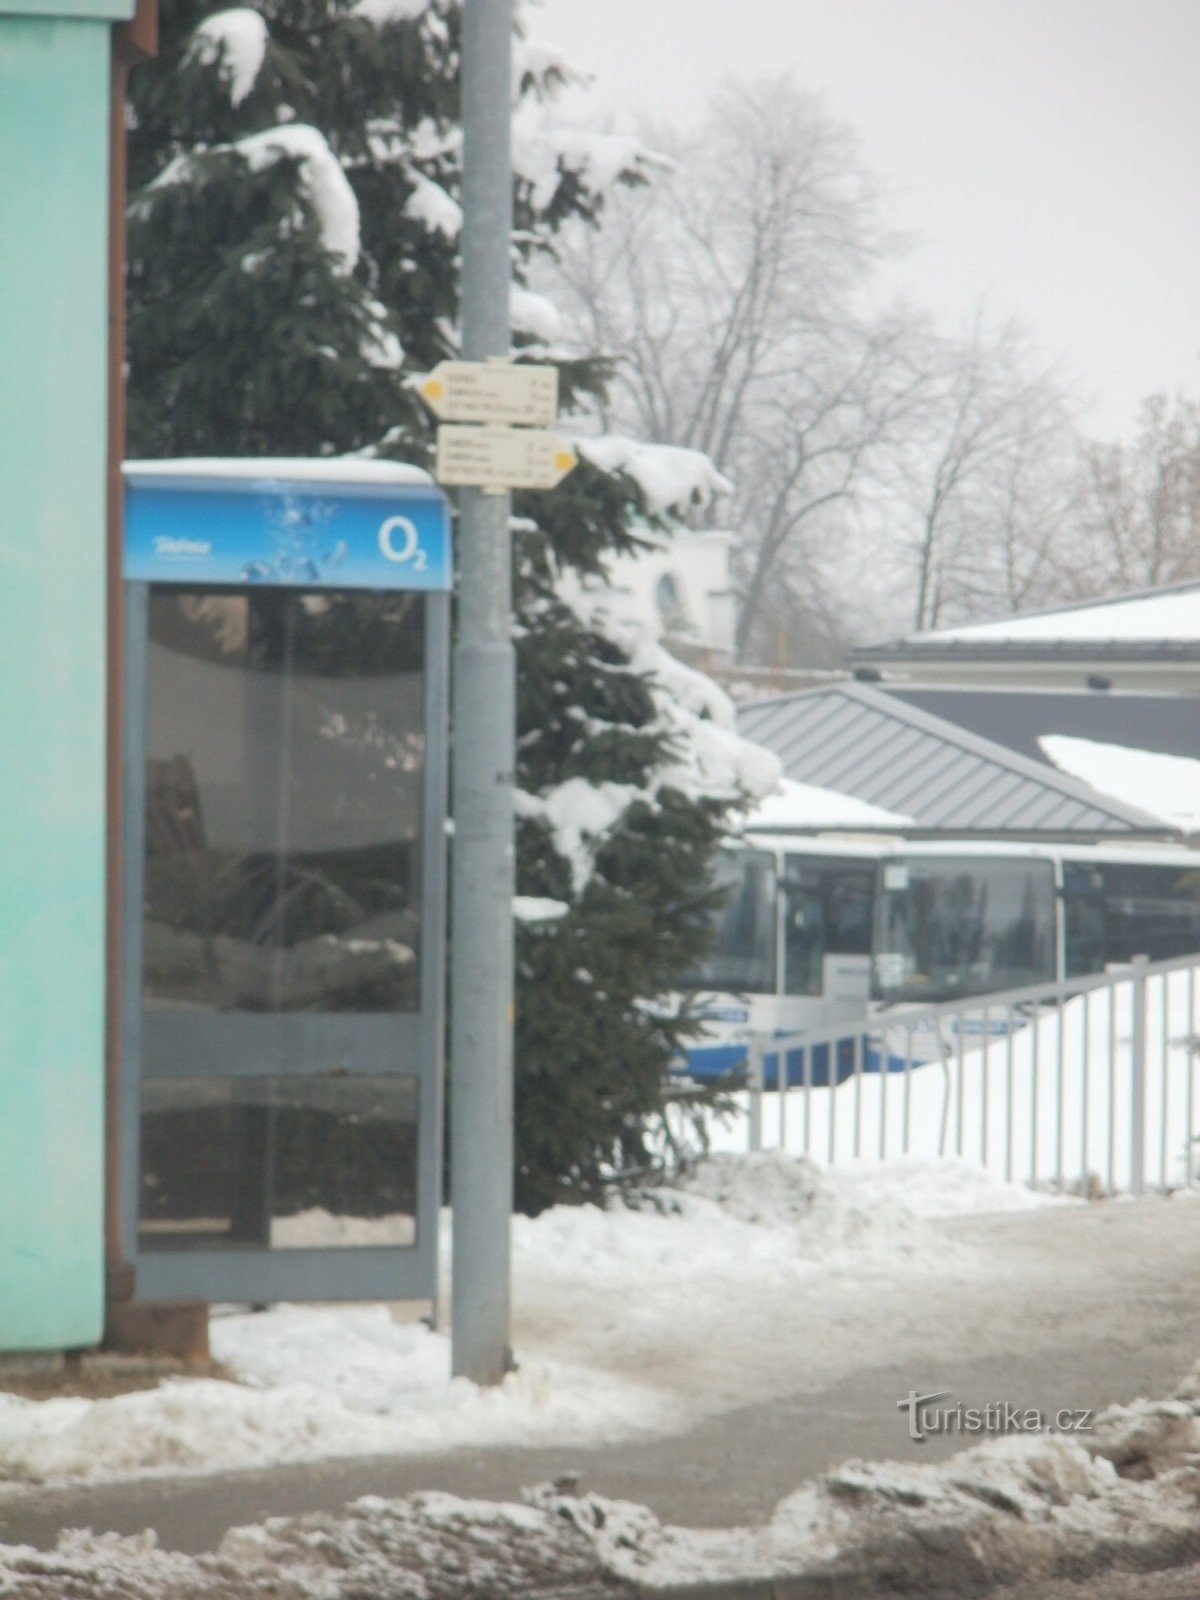 răscruce turistică Žamberk - la stația de autobuz